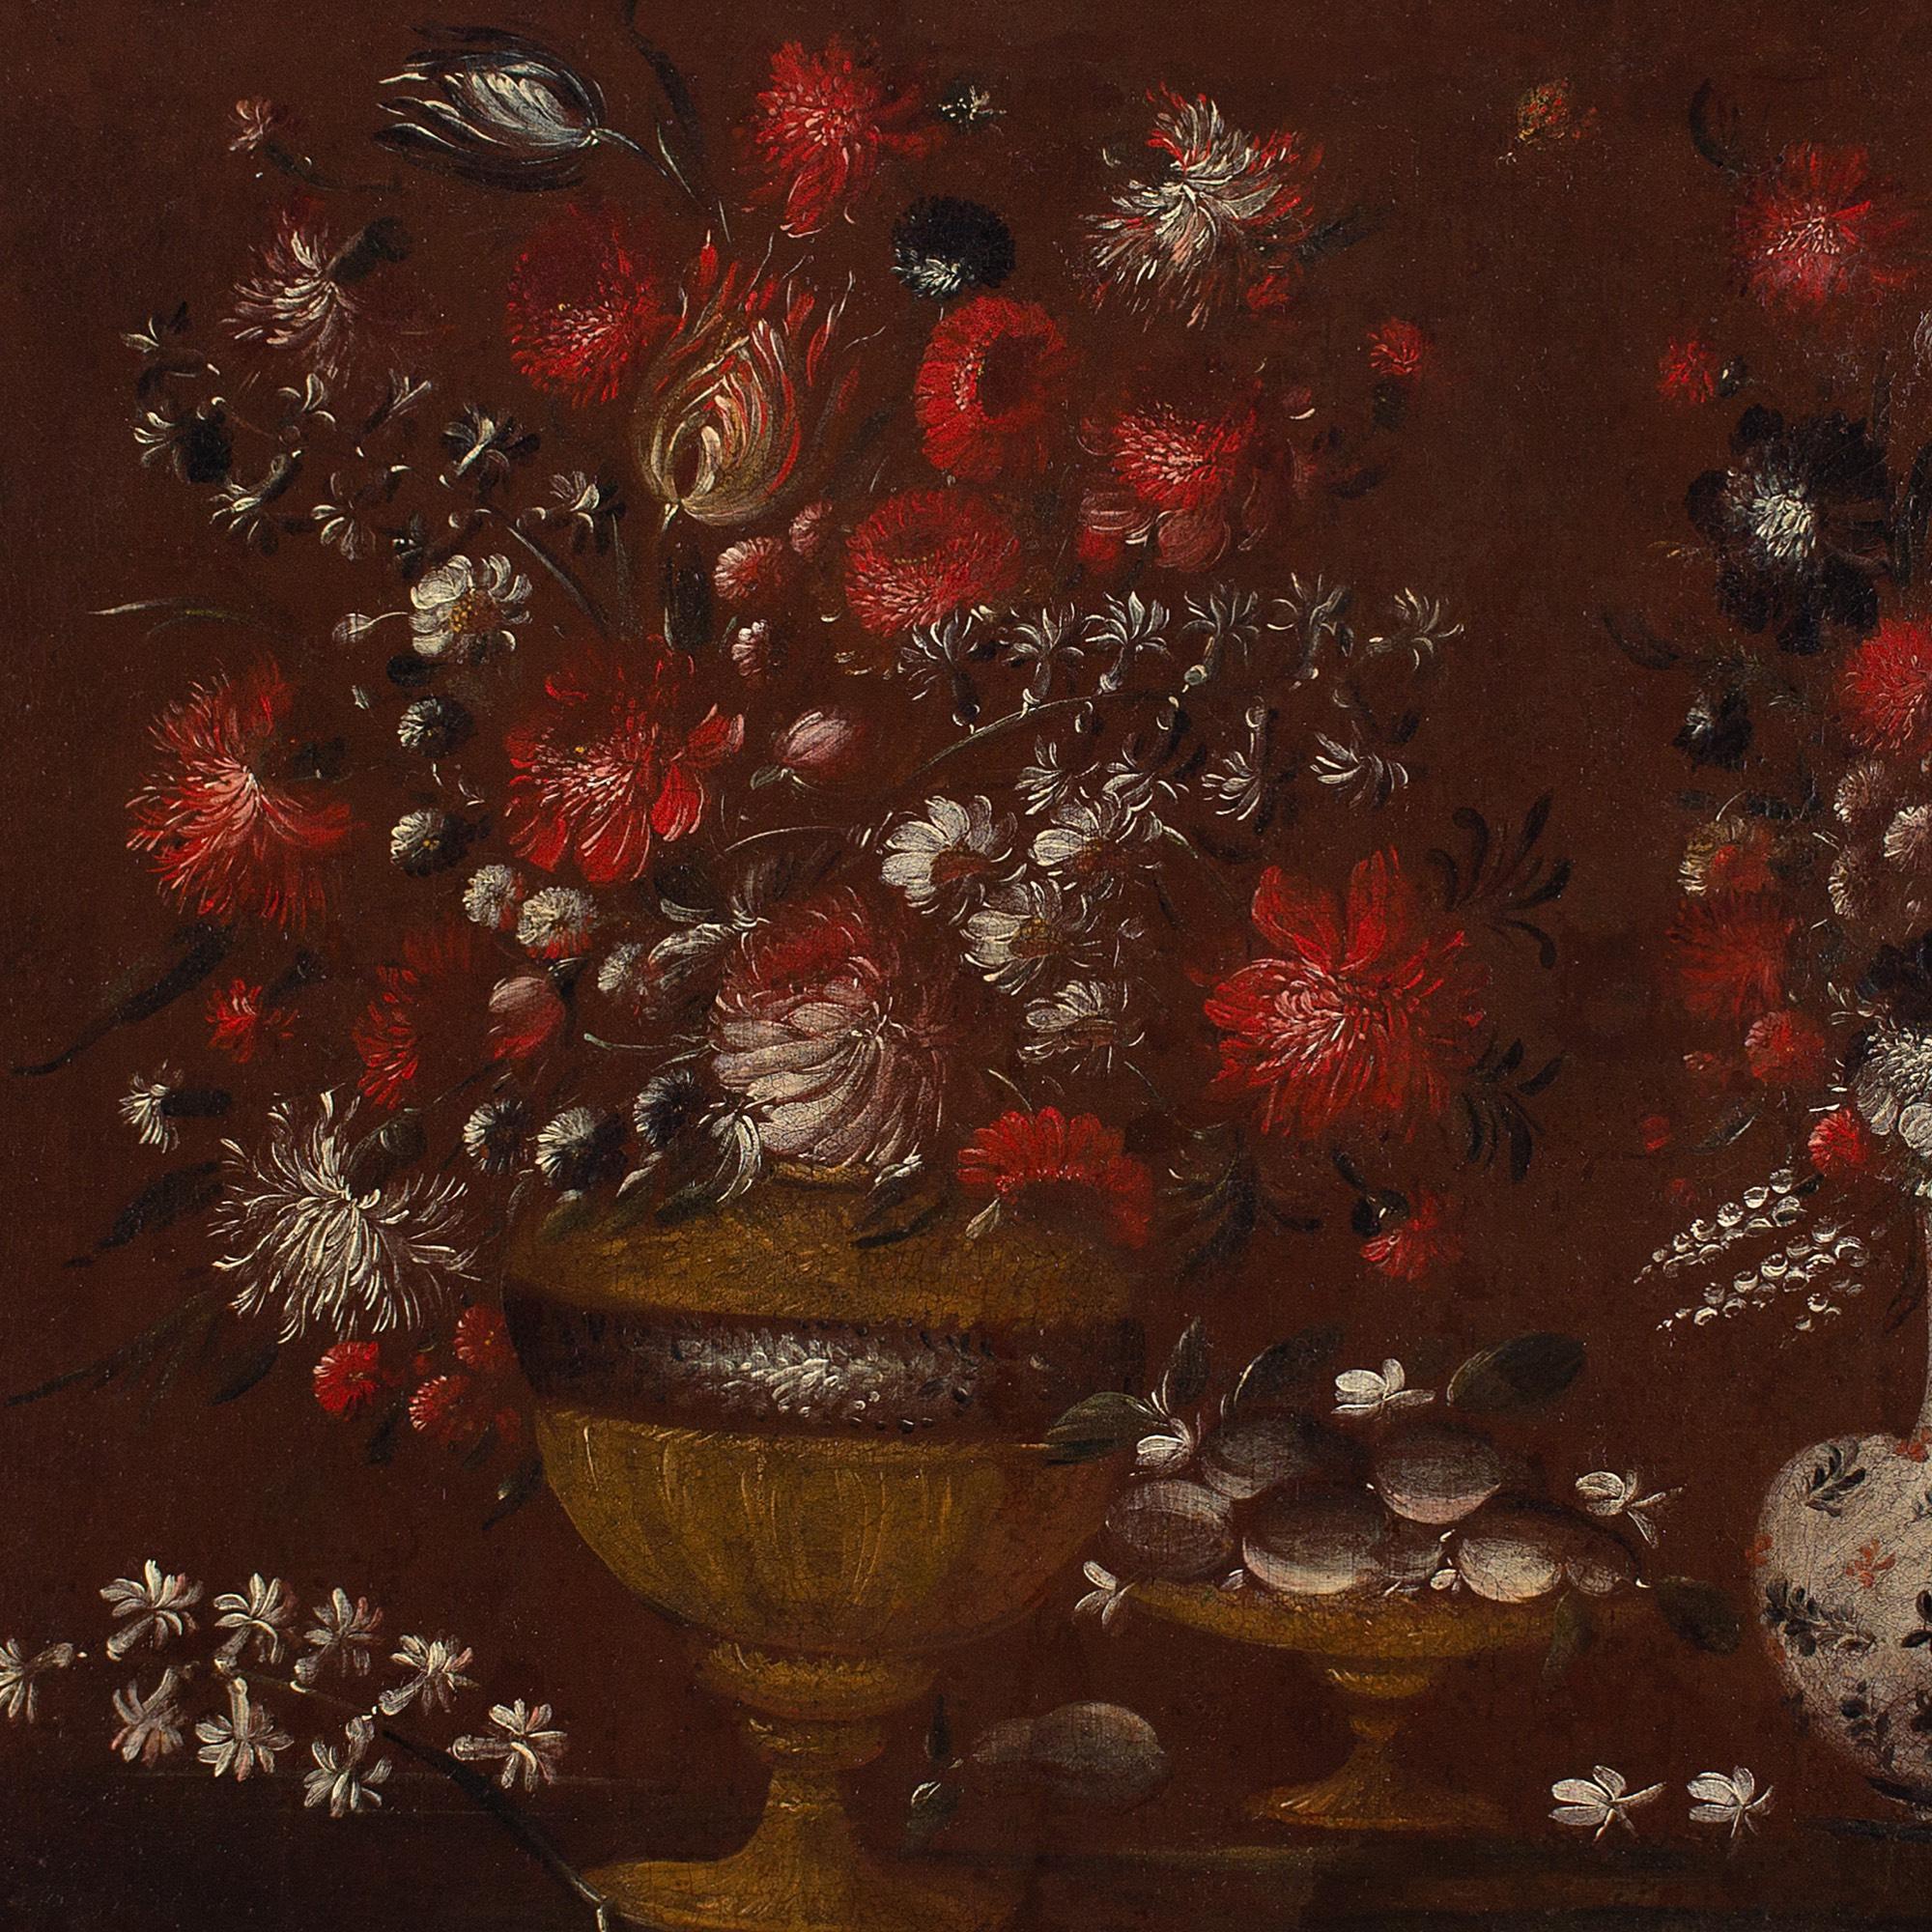 Cette nature morte italienne de la fin du XVIIe siècle représente une urne avec des fleurs, un plat de fruits, une bouteille en porcelaine et un oiseau. Il faisait auparavant partie de la collection du National Trust.

Imaginez, si vous le voulez